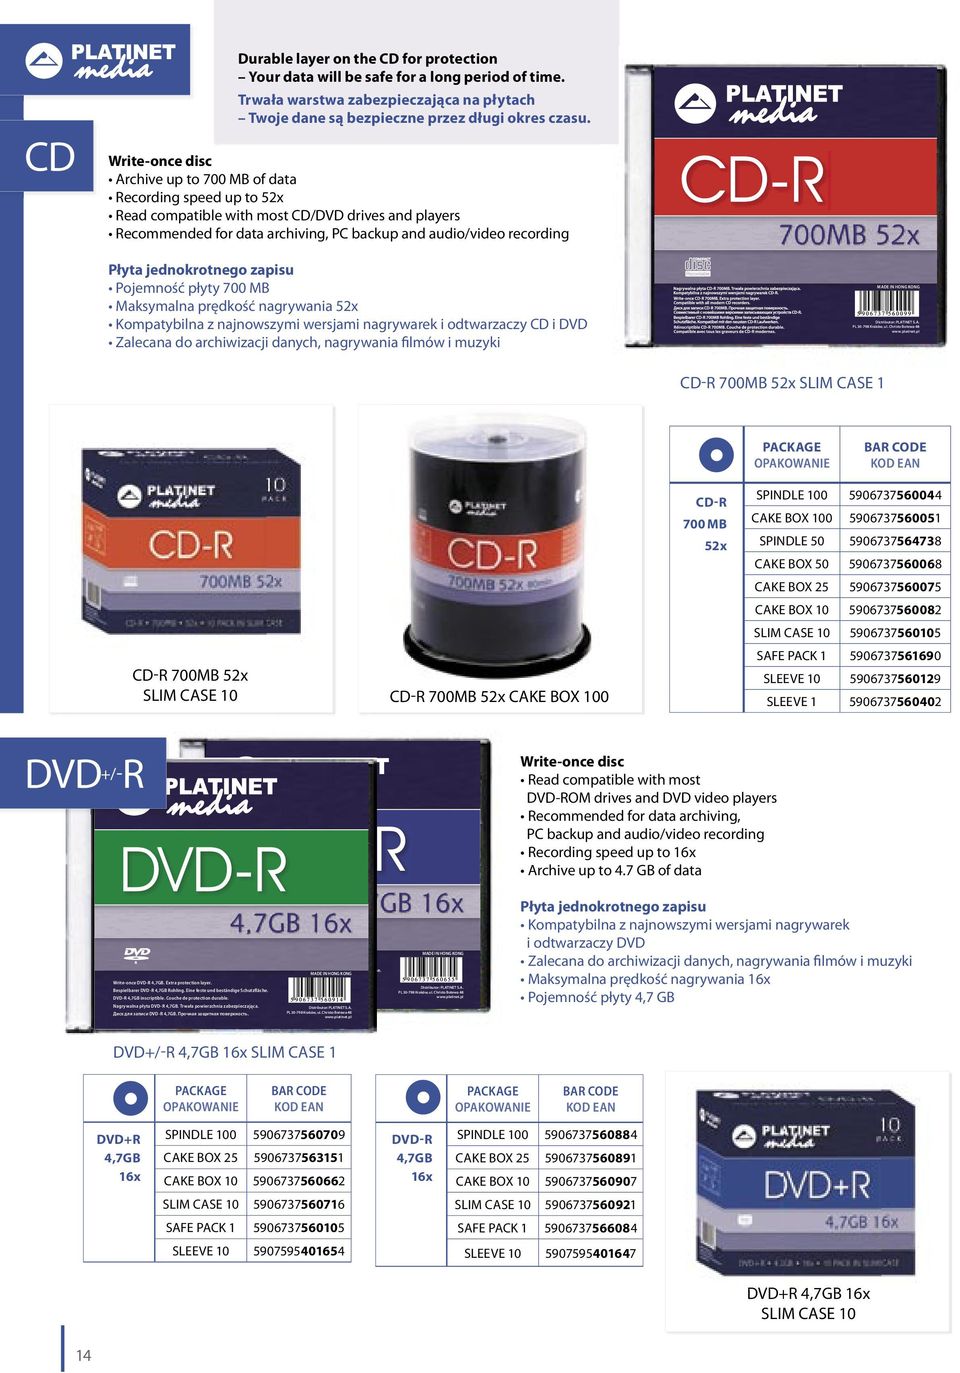 jednokrotnego zapisu Pojemność płyty 700 MB Maksymalna prędkość nagrywania 52x Kompatybilna z najnowszymi wersjami nagrywarek i odtwarzaczy CD i DVD Zalecana do archiwizacji danych, nagrywania filmów